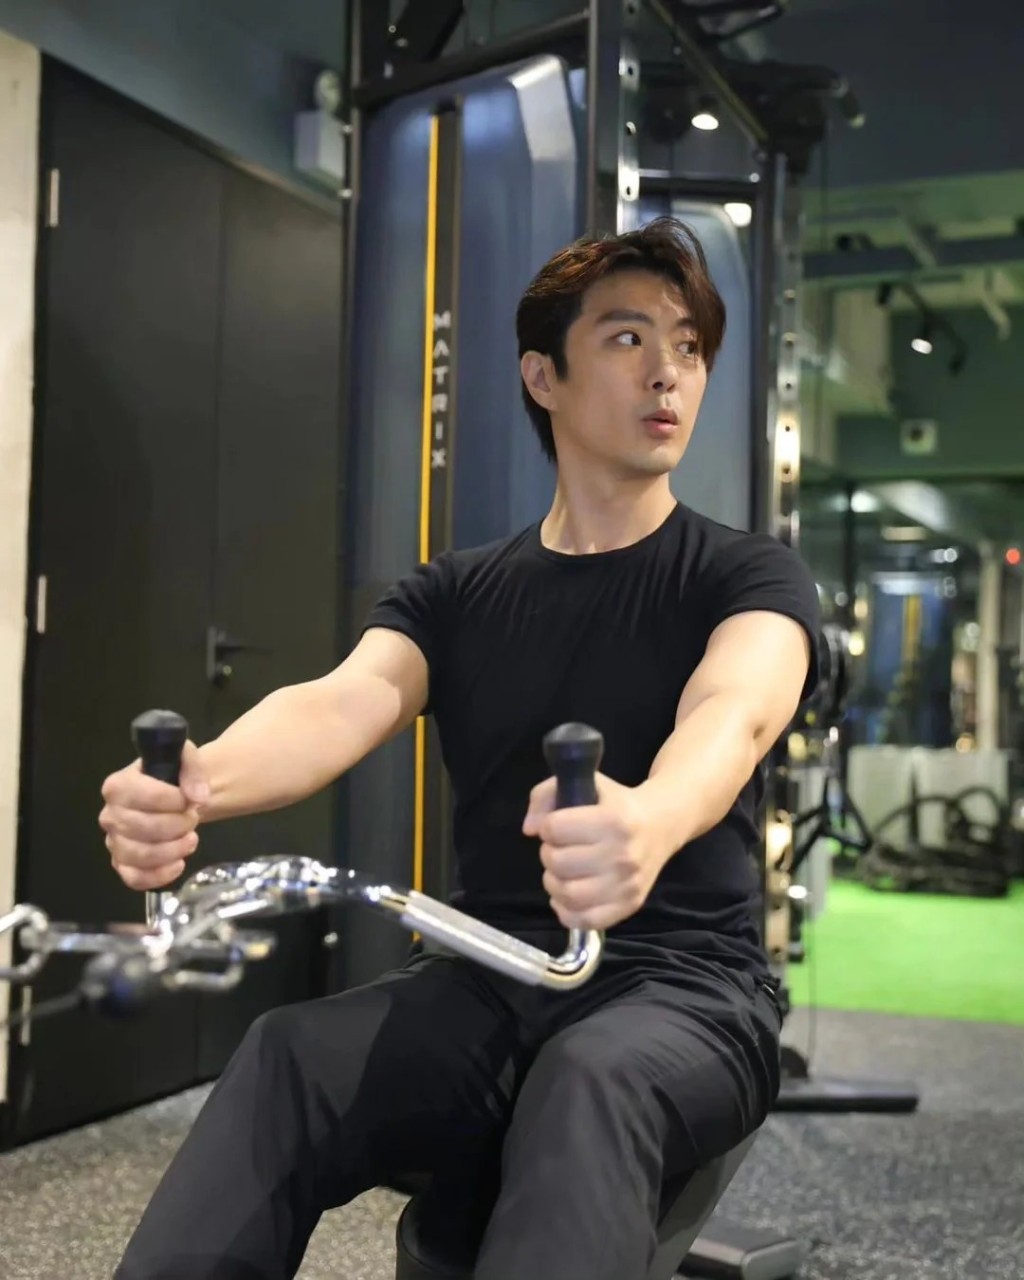 张景淳经常去自己投资的健身室做gym，因而出现在屯门亦是很合理。